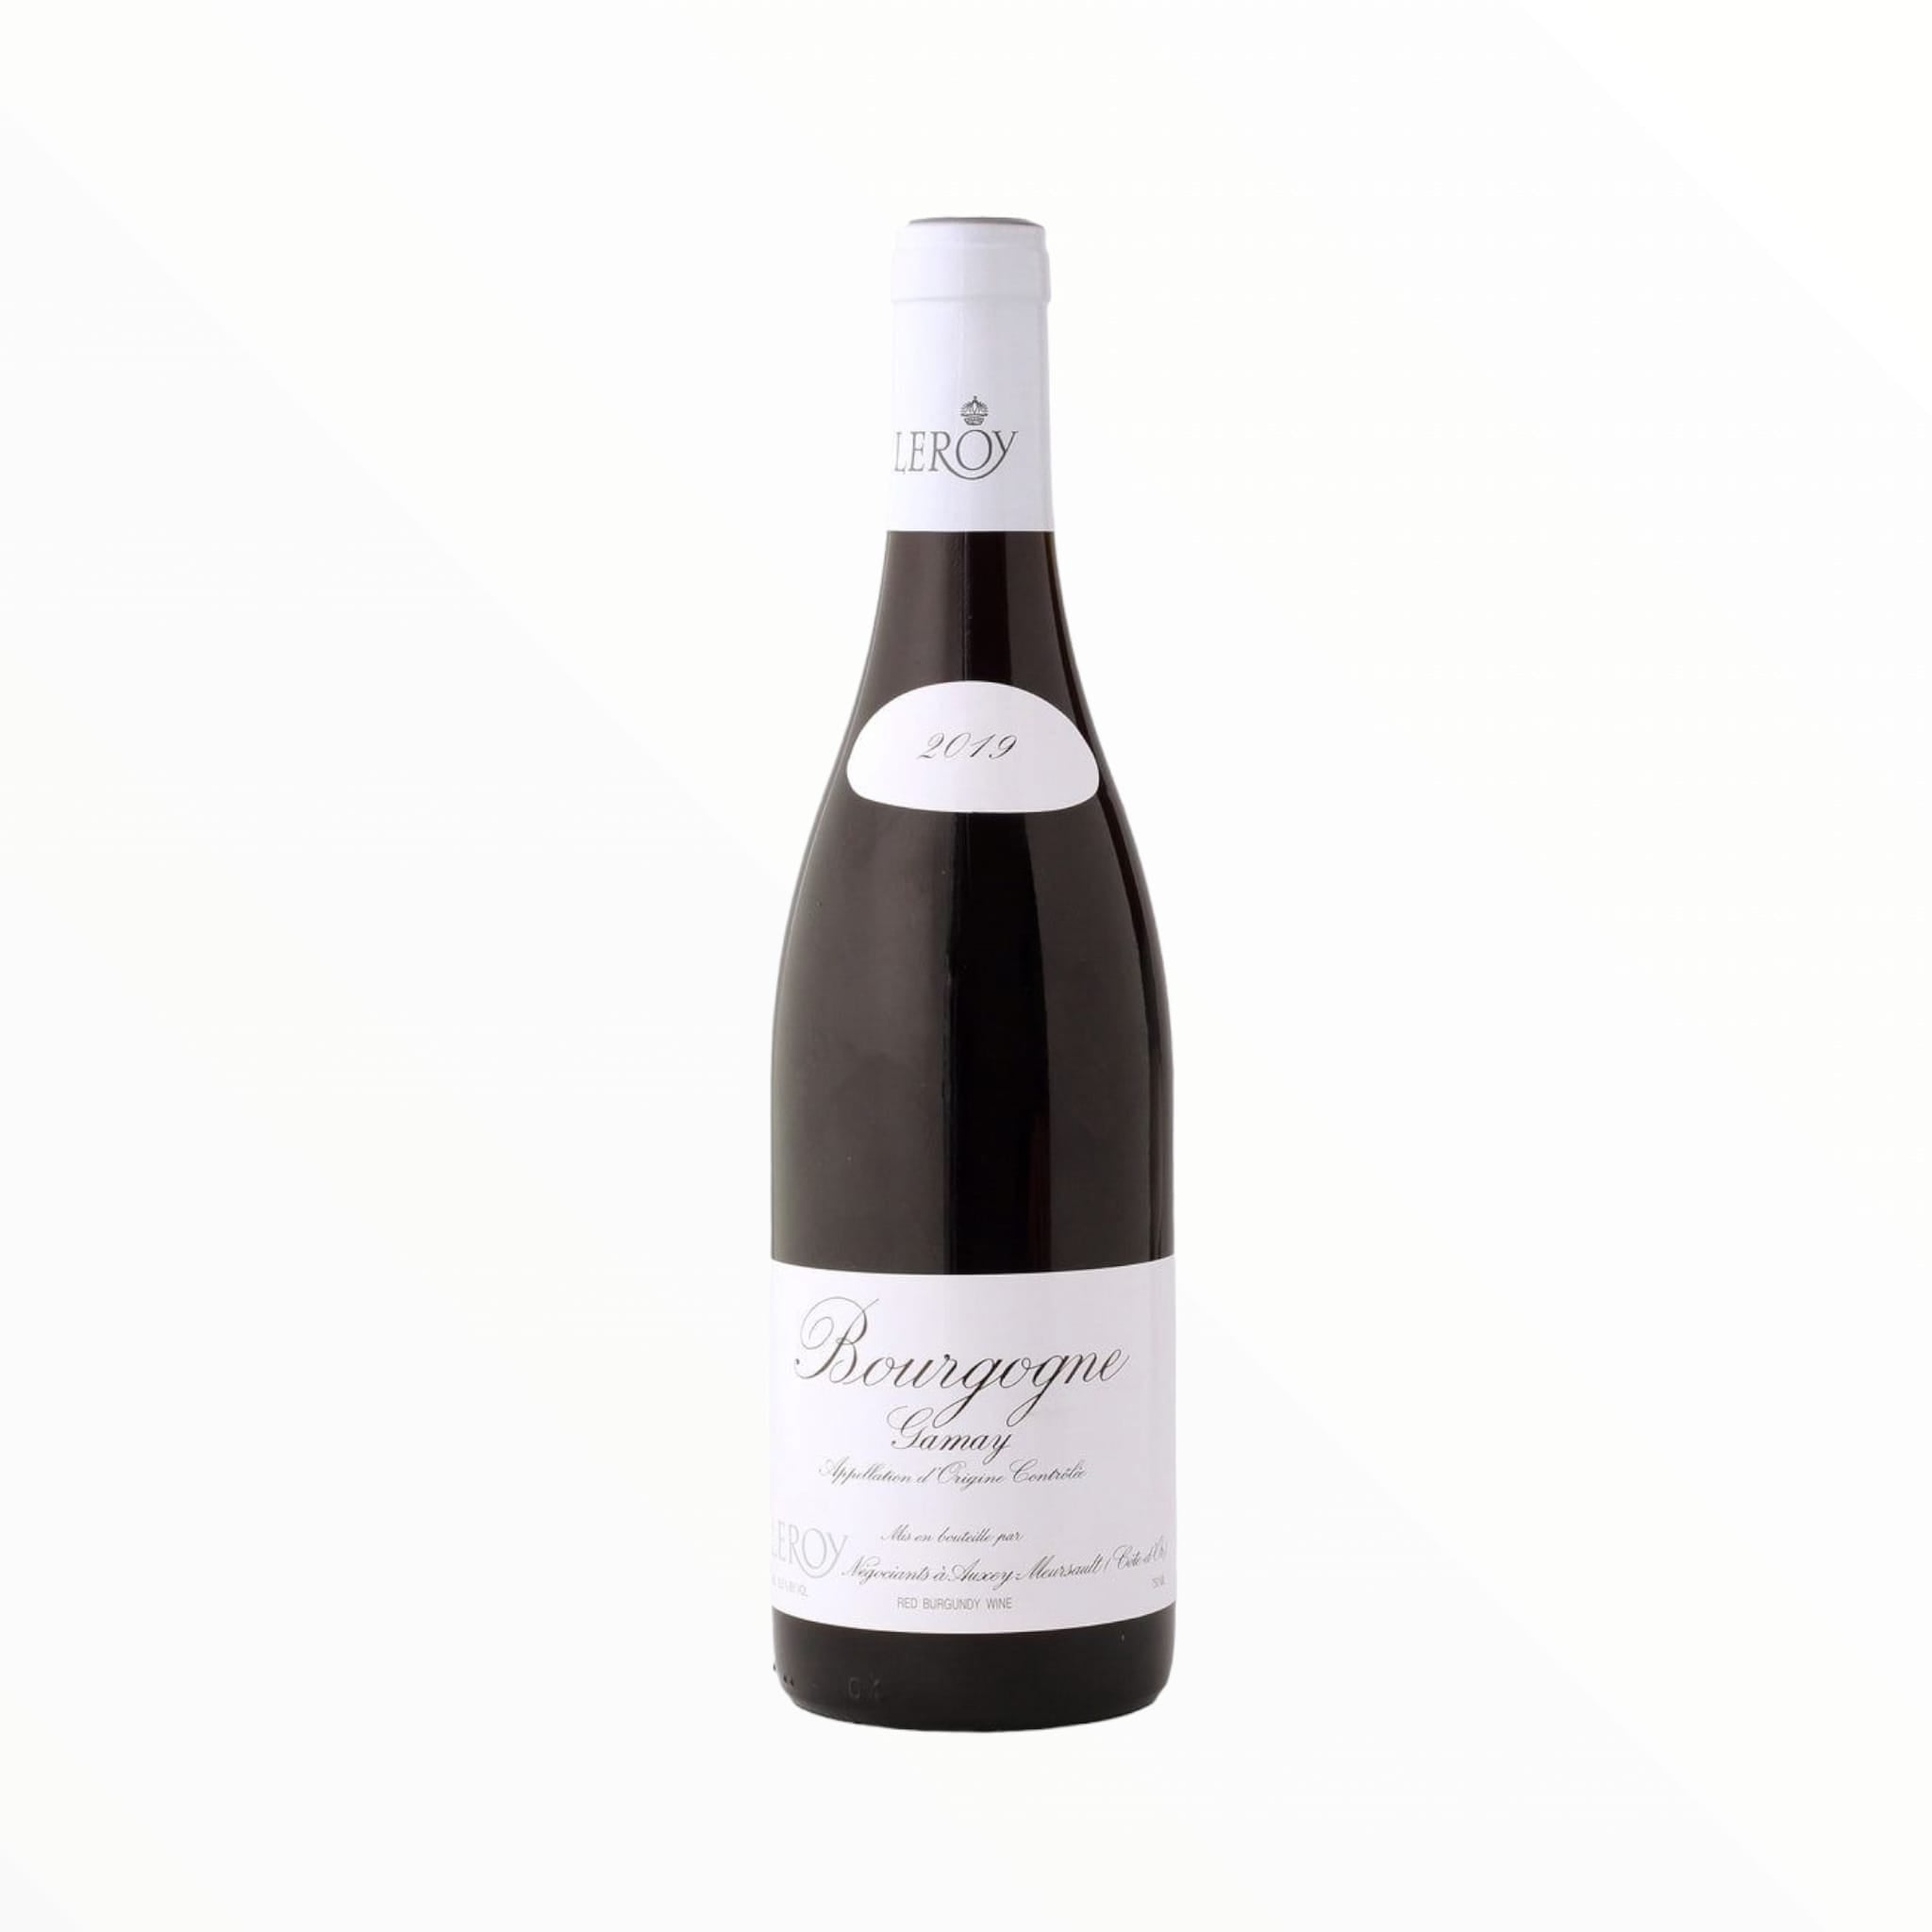 2018 Maison Leroy, Bourgogne Gamay 750ml – V Wine